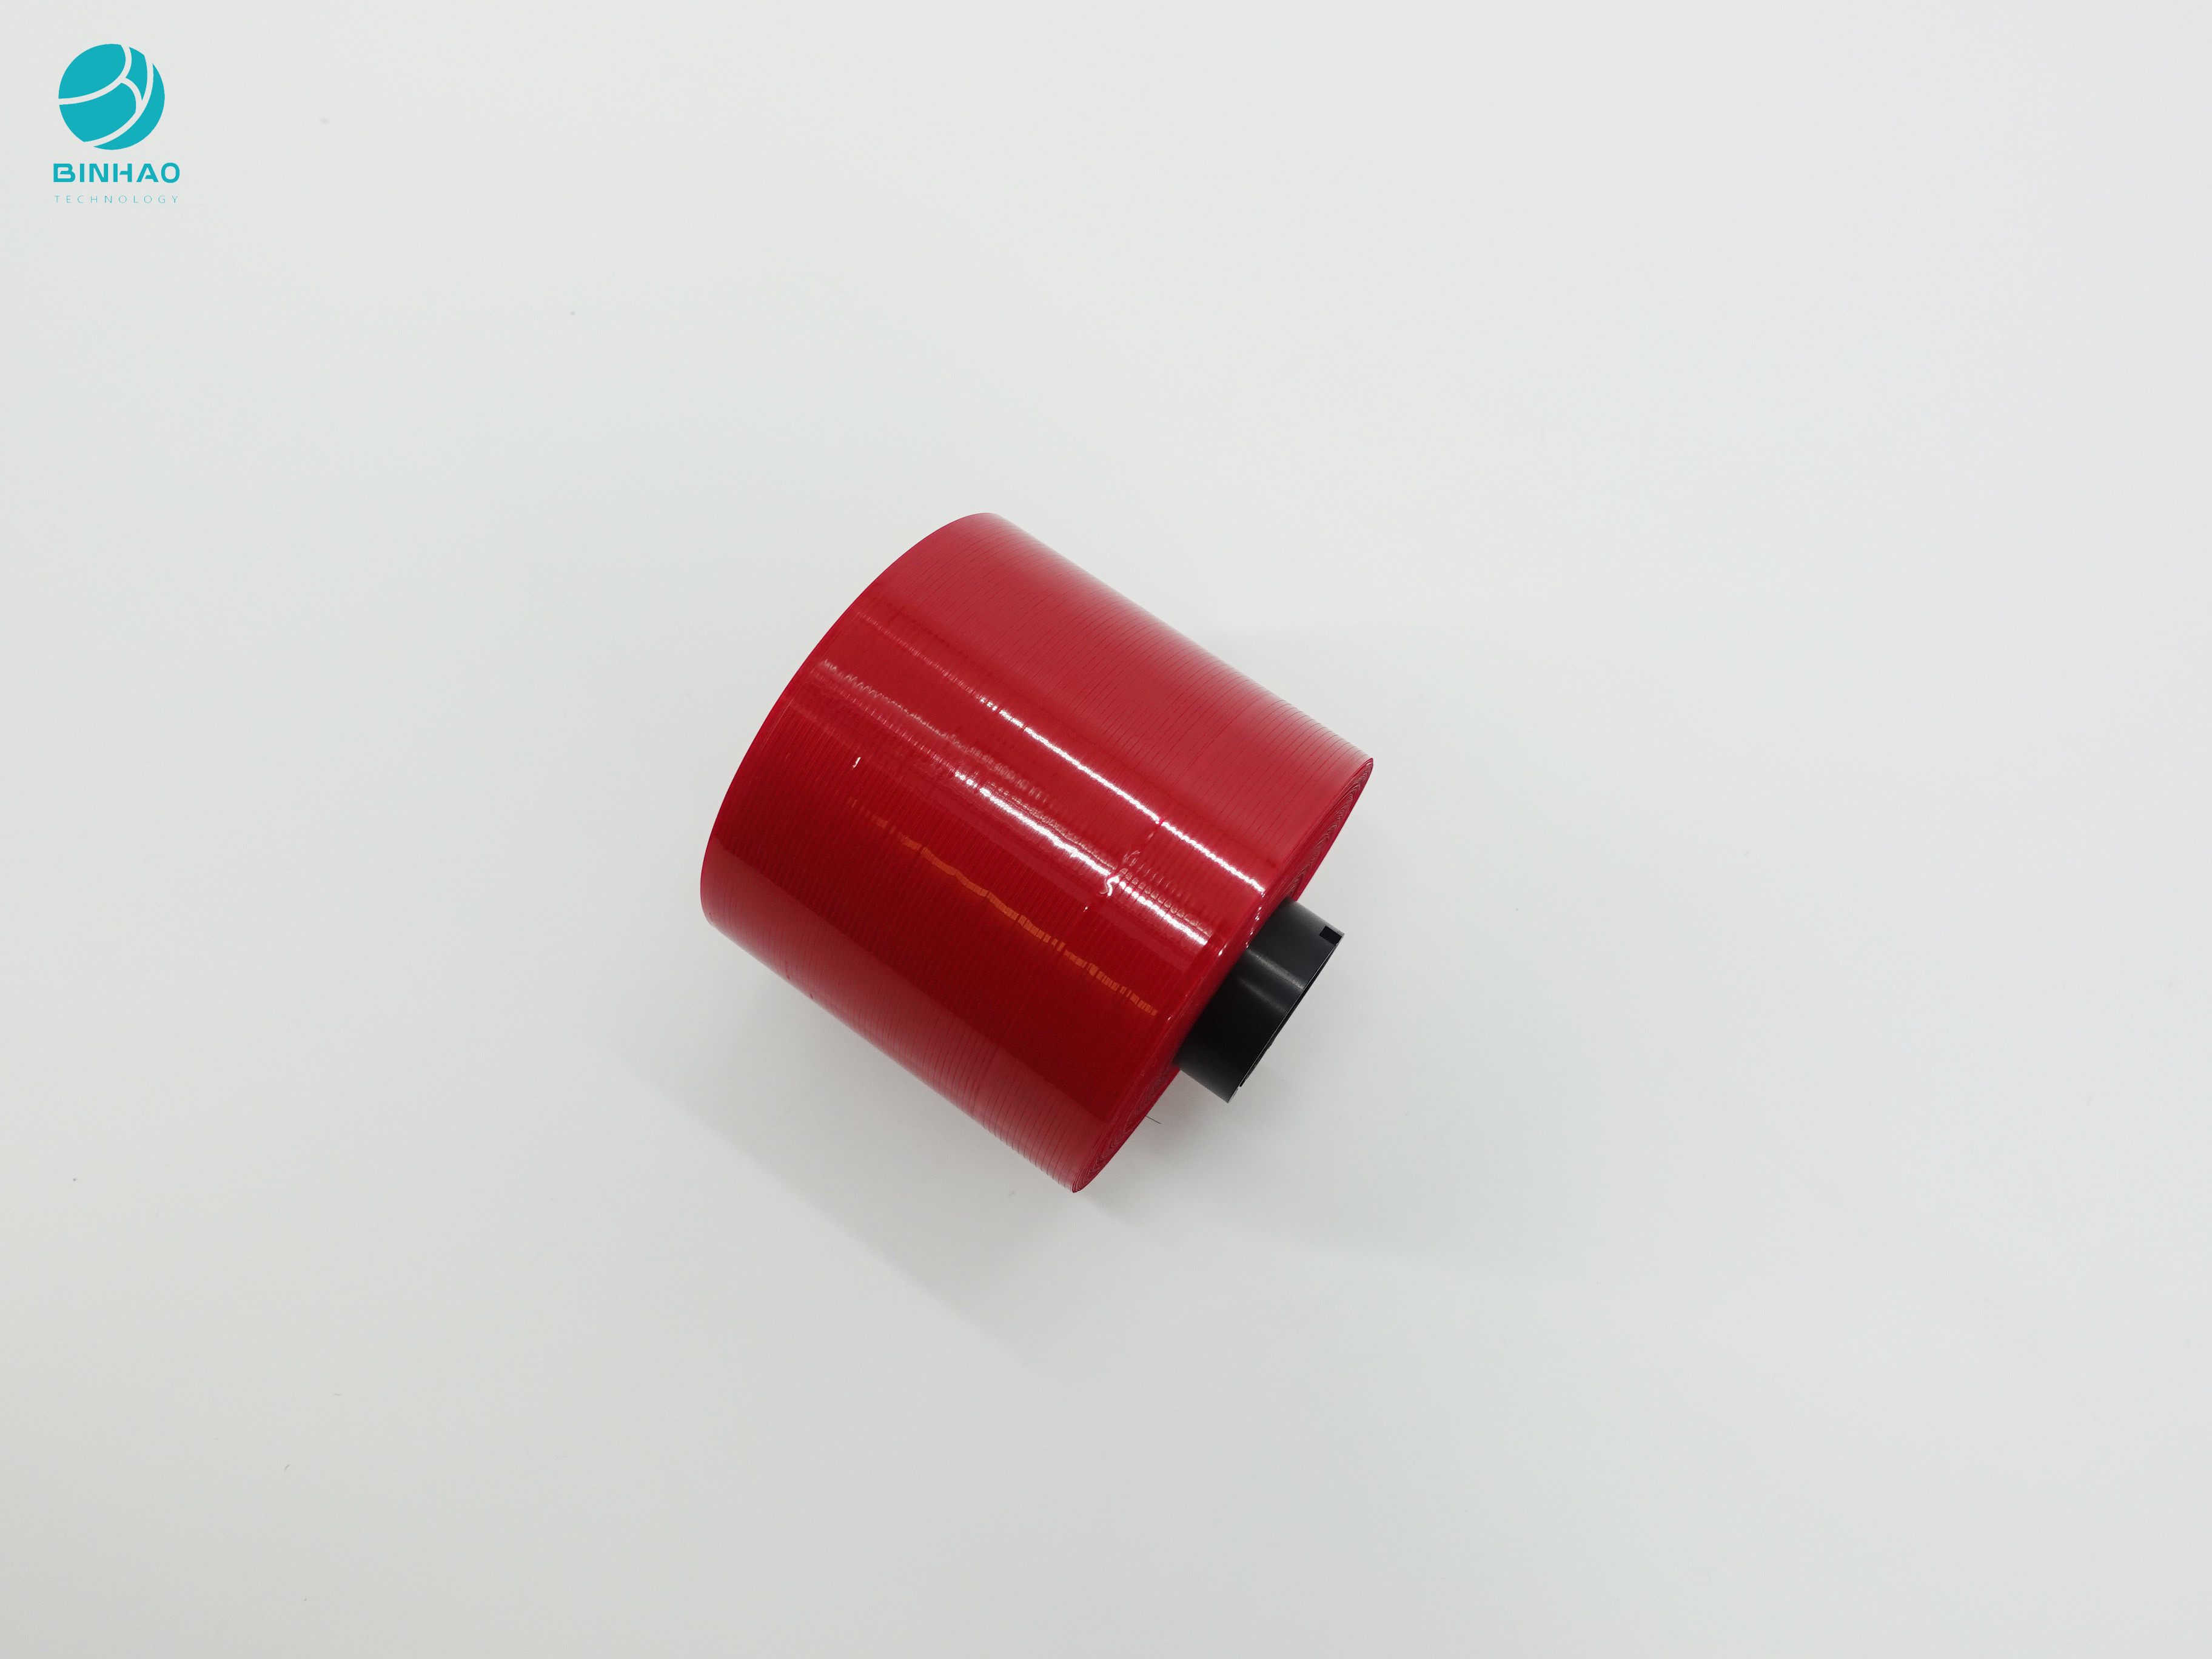 Σκούρο κόκκινο αντι σχέδιο 3mm πλαστογράφησης ταινία δακρυ'ων για τη συσκευασία κιβωτίων τσιγάρων